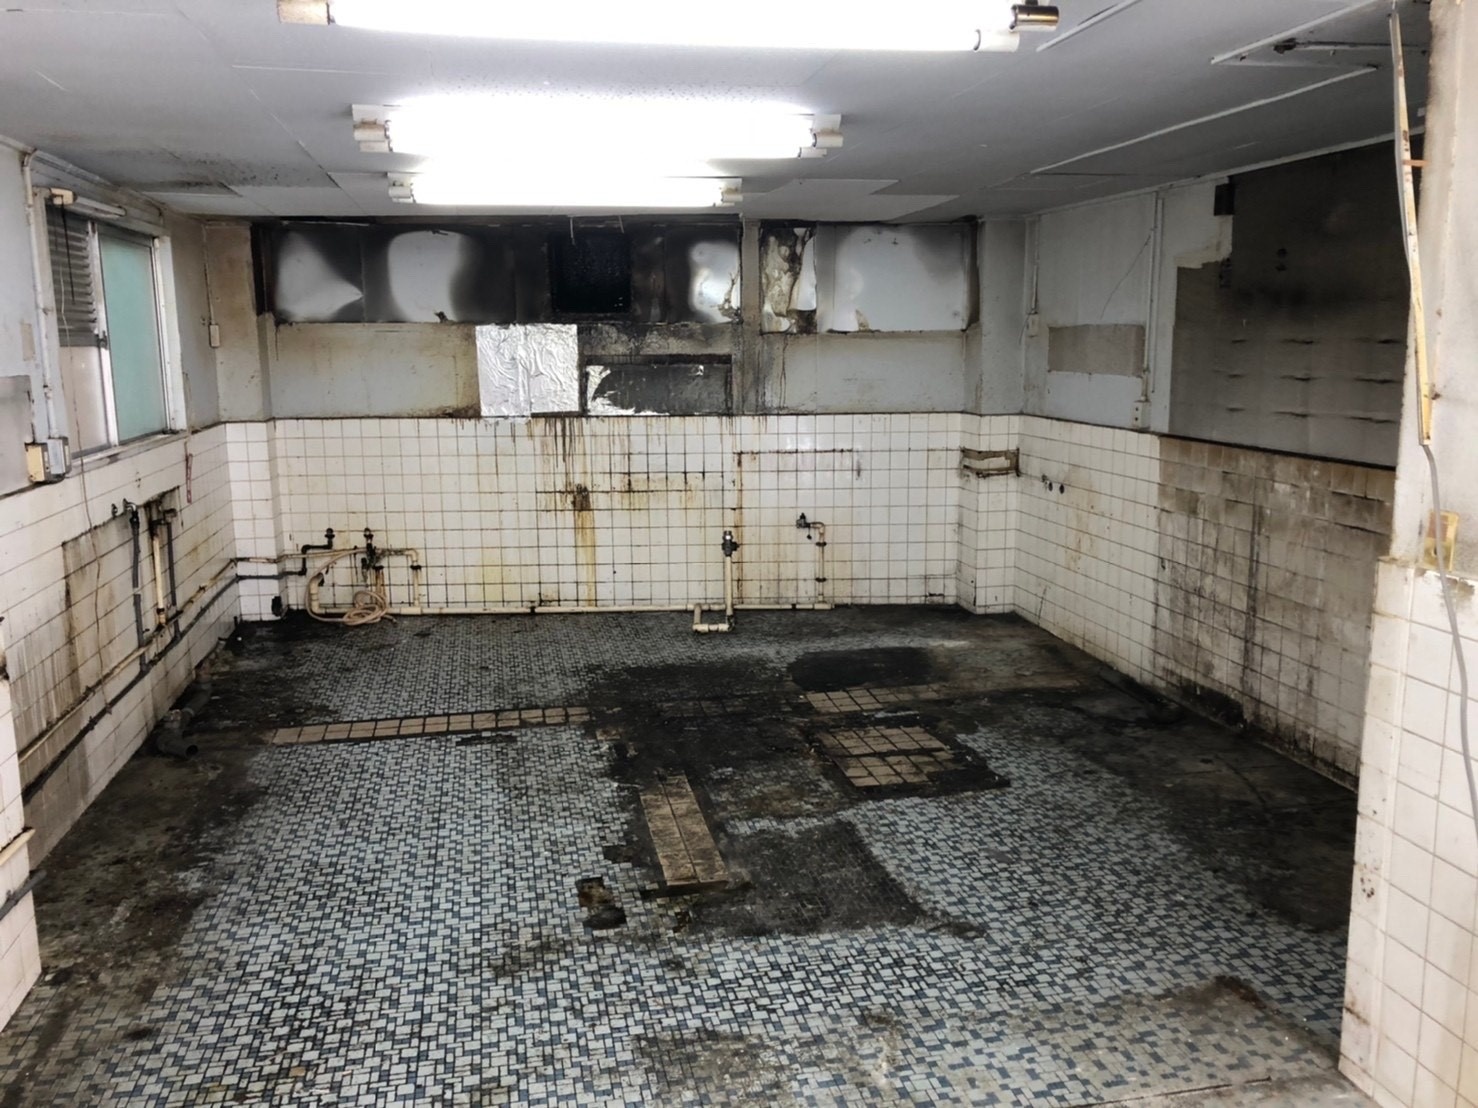 東京都新宿区のアパートの1室に構えた弁当屋の厨房機器回収と解体工事